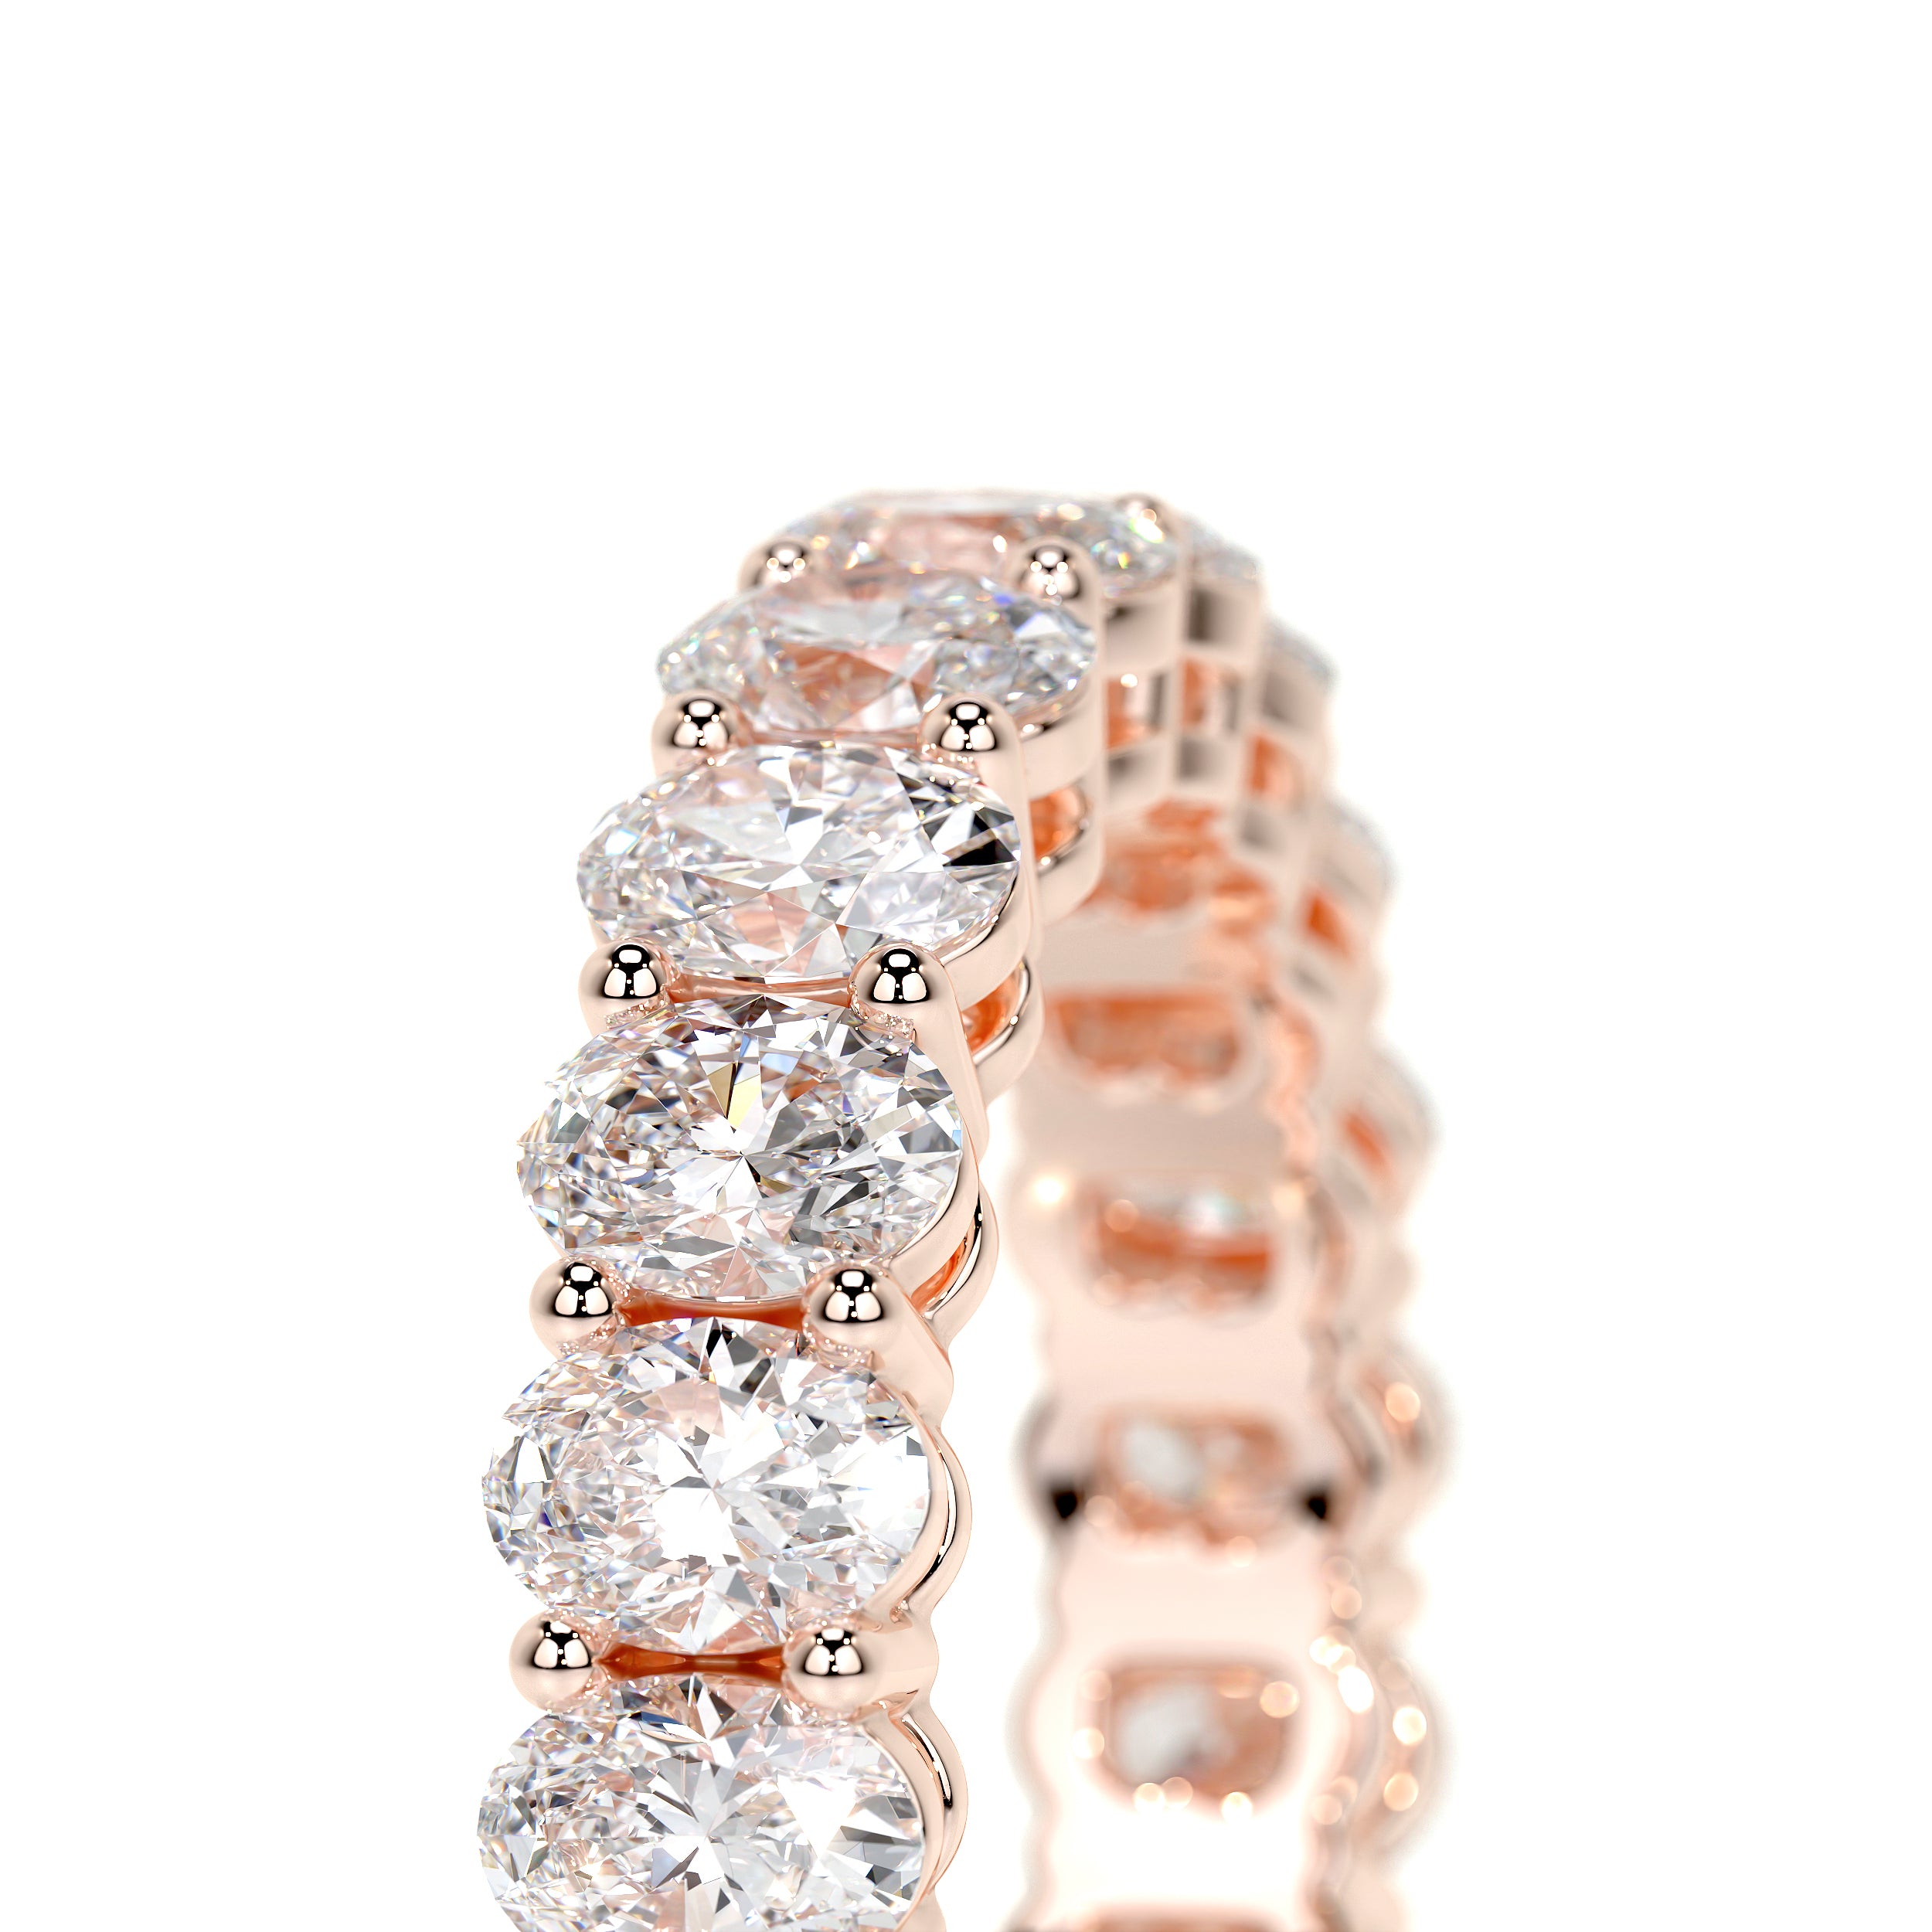 Julia Lab Grown Diamond Wedding Ring -14K Rose Gold